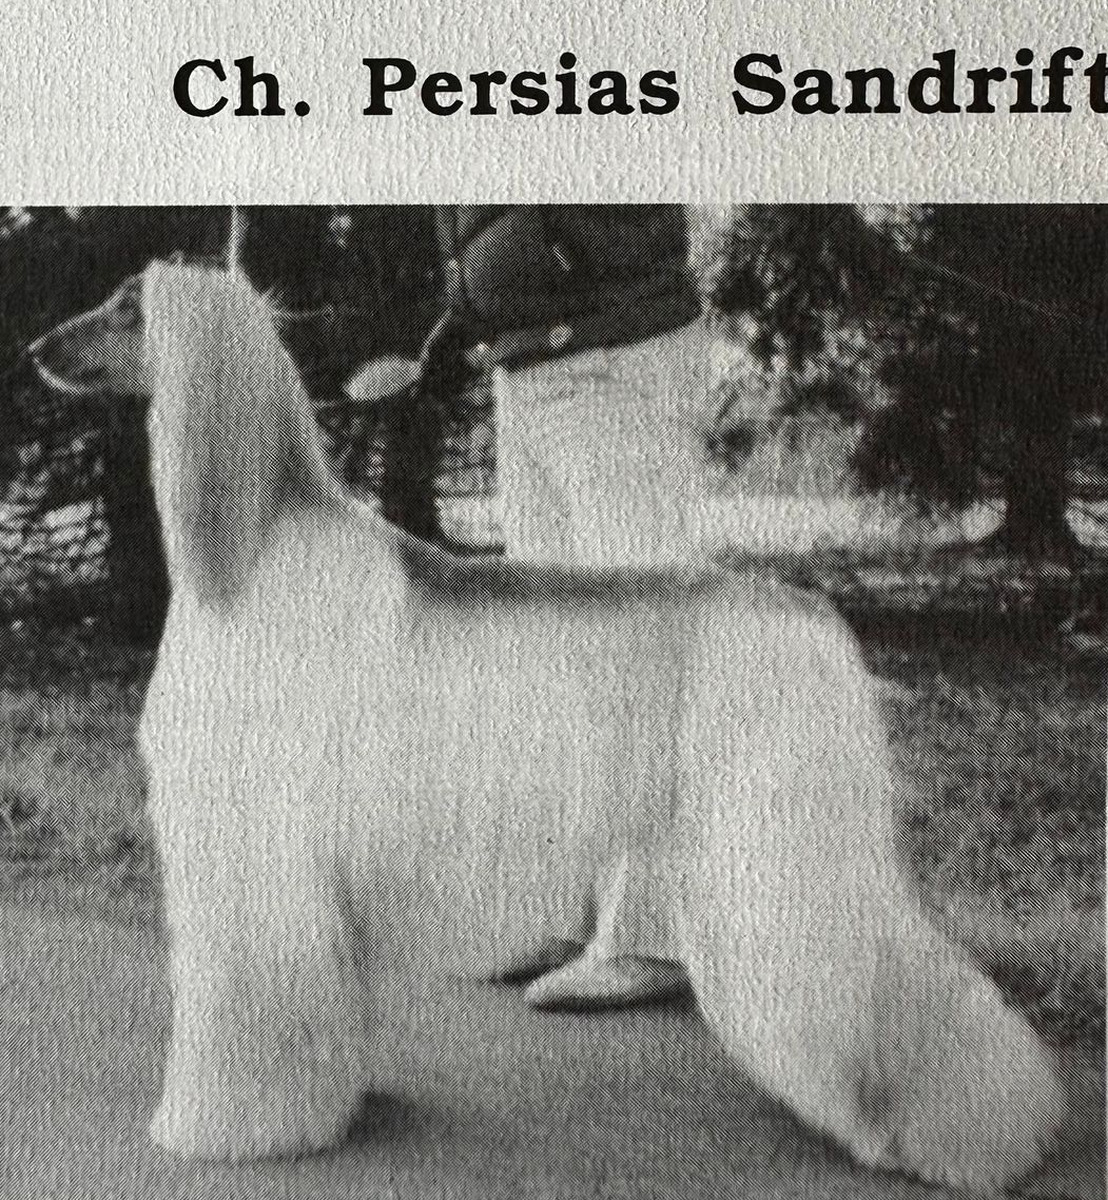 Image of Persia's Sandrift